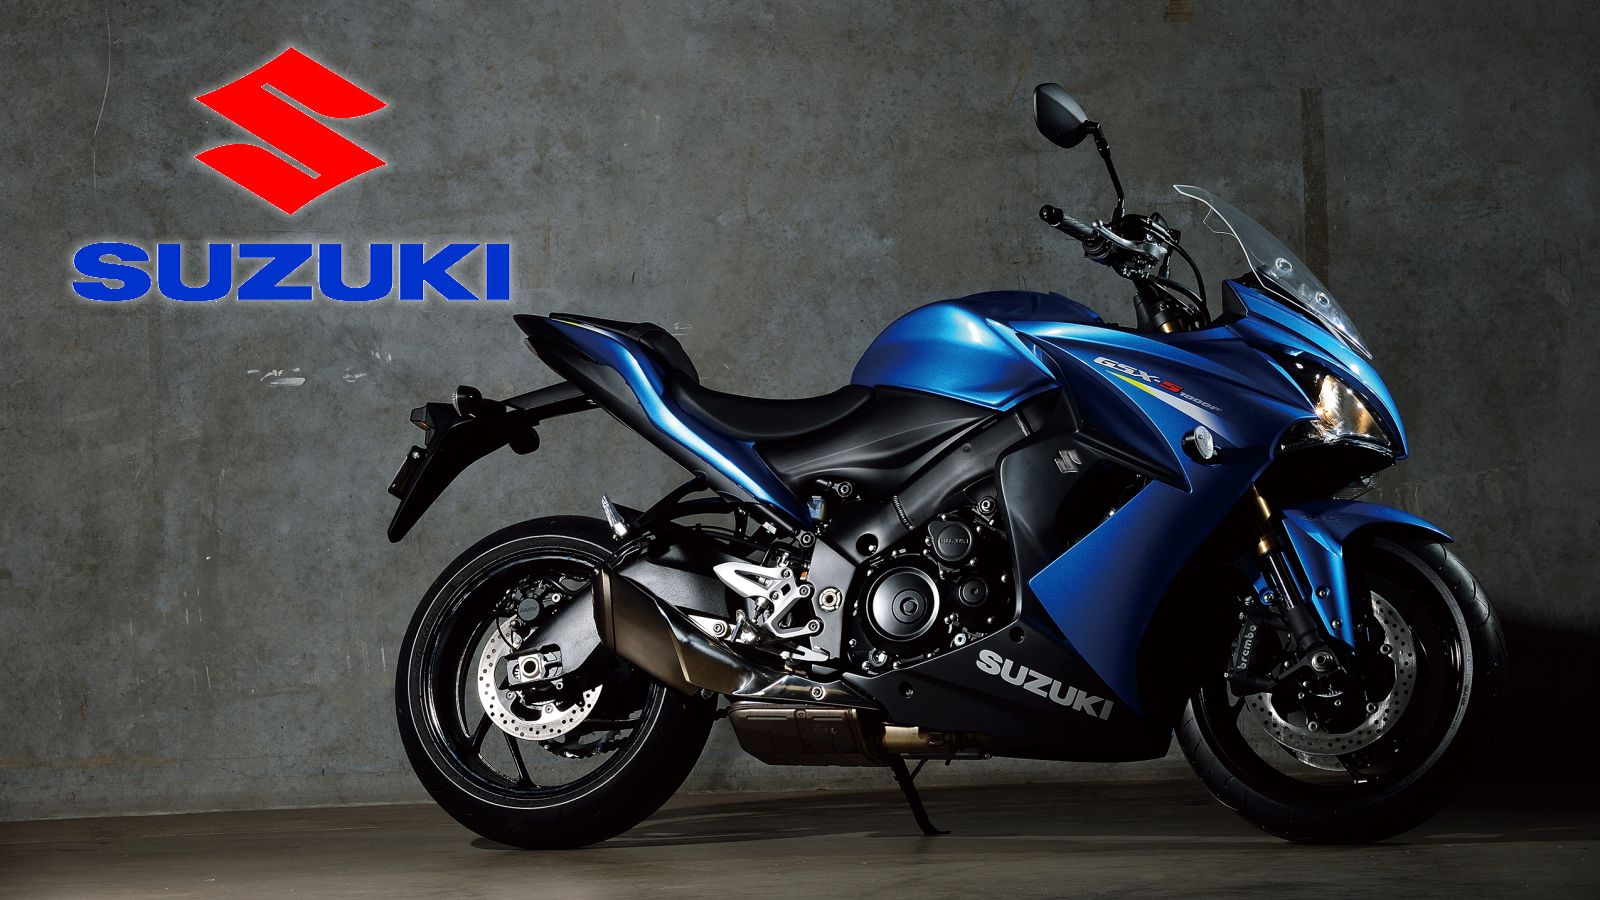 2016 - 2017 Suzuki GSX-S1000 / GSX-S1000F